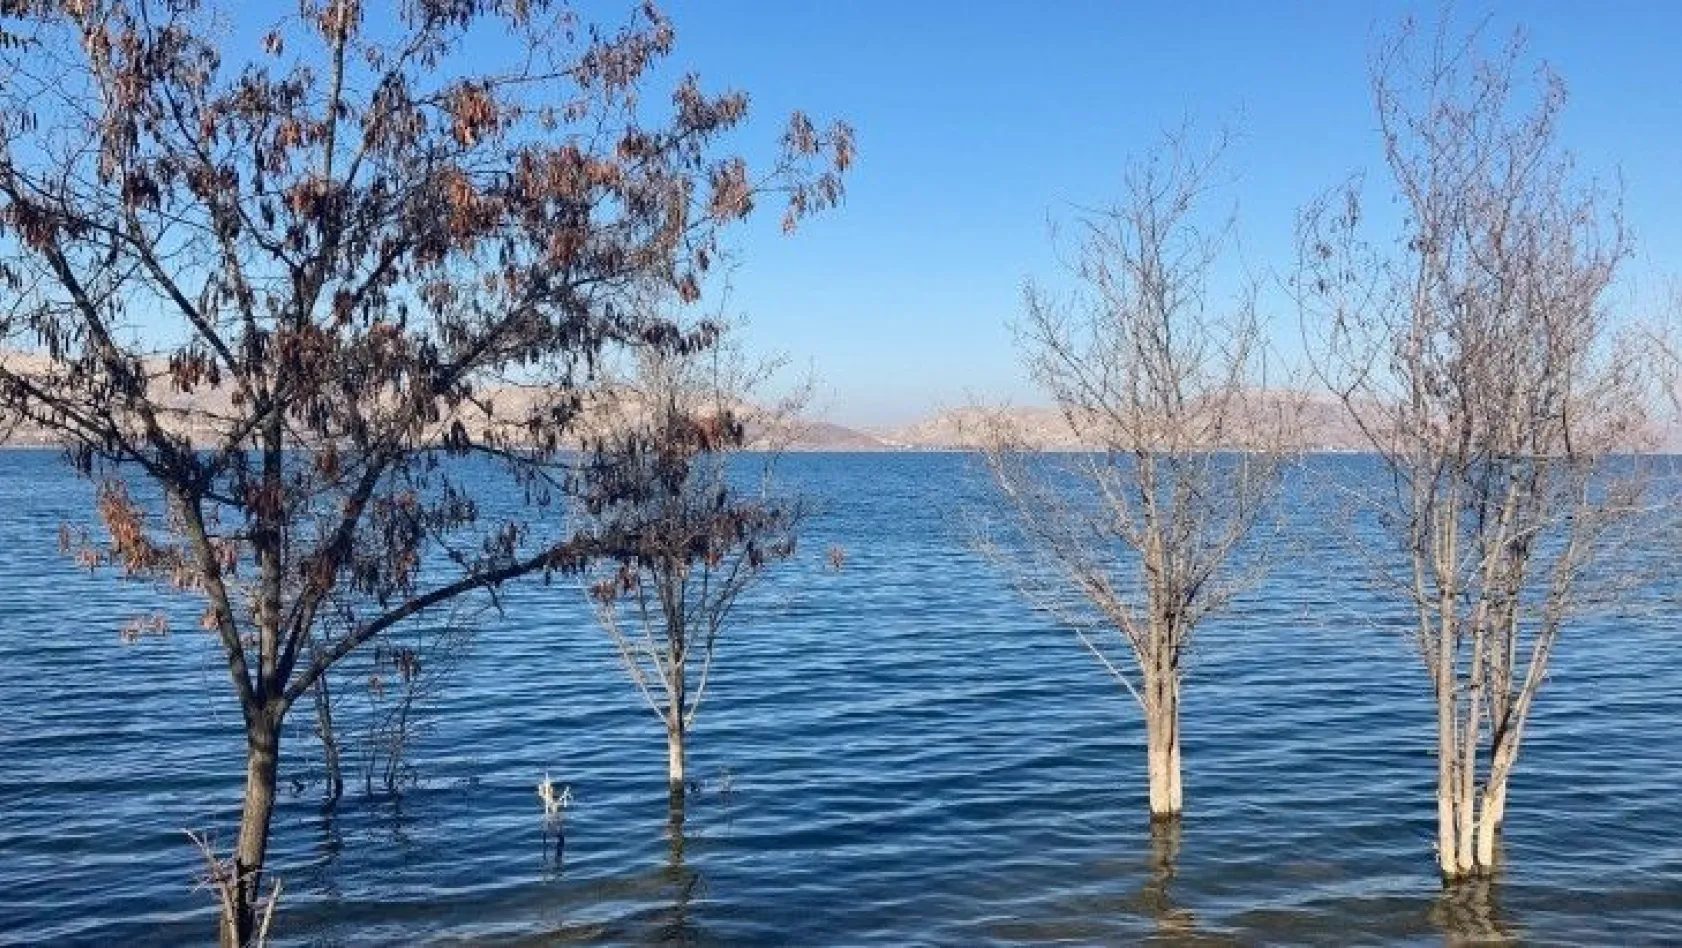 Hazar Gölü'ndeki yükselen su seviyesi dikkat çekti